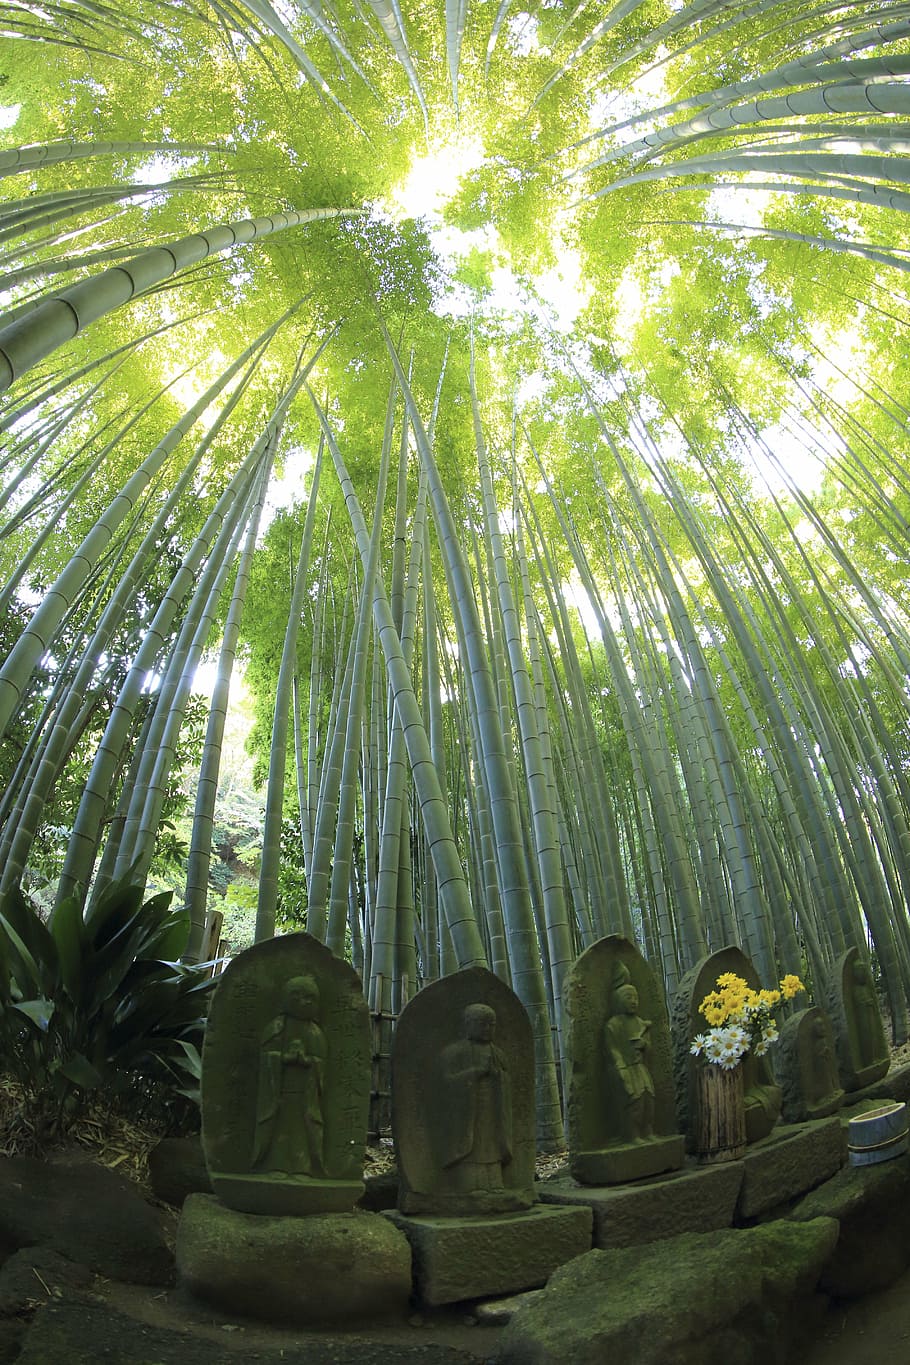 monumen batu, di samping, rumput bambu, siang hari, alam, daun, hijau, bambu, kayu, hutan